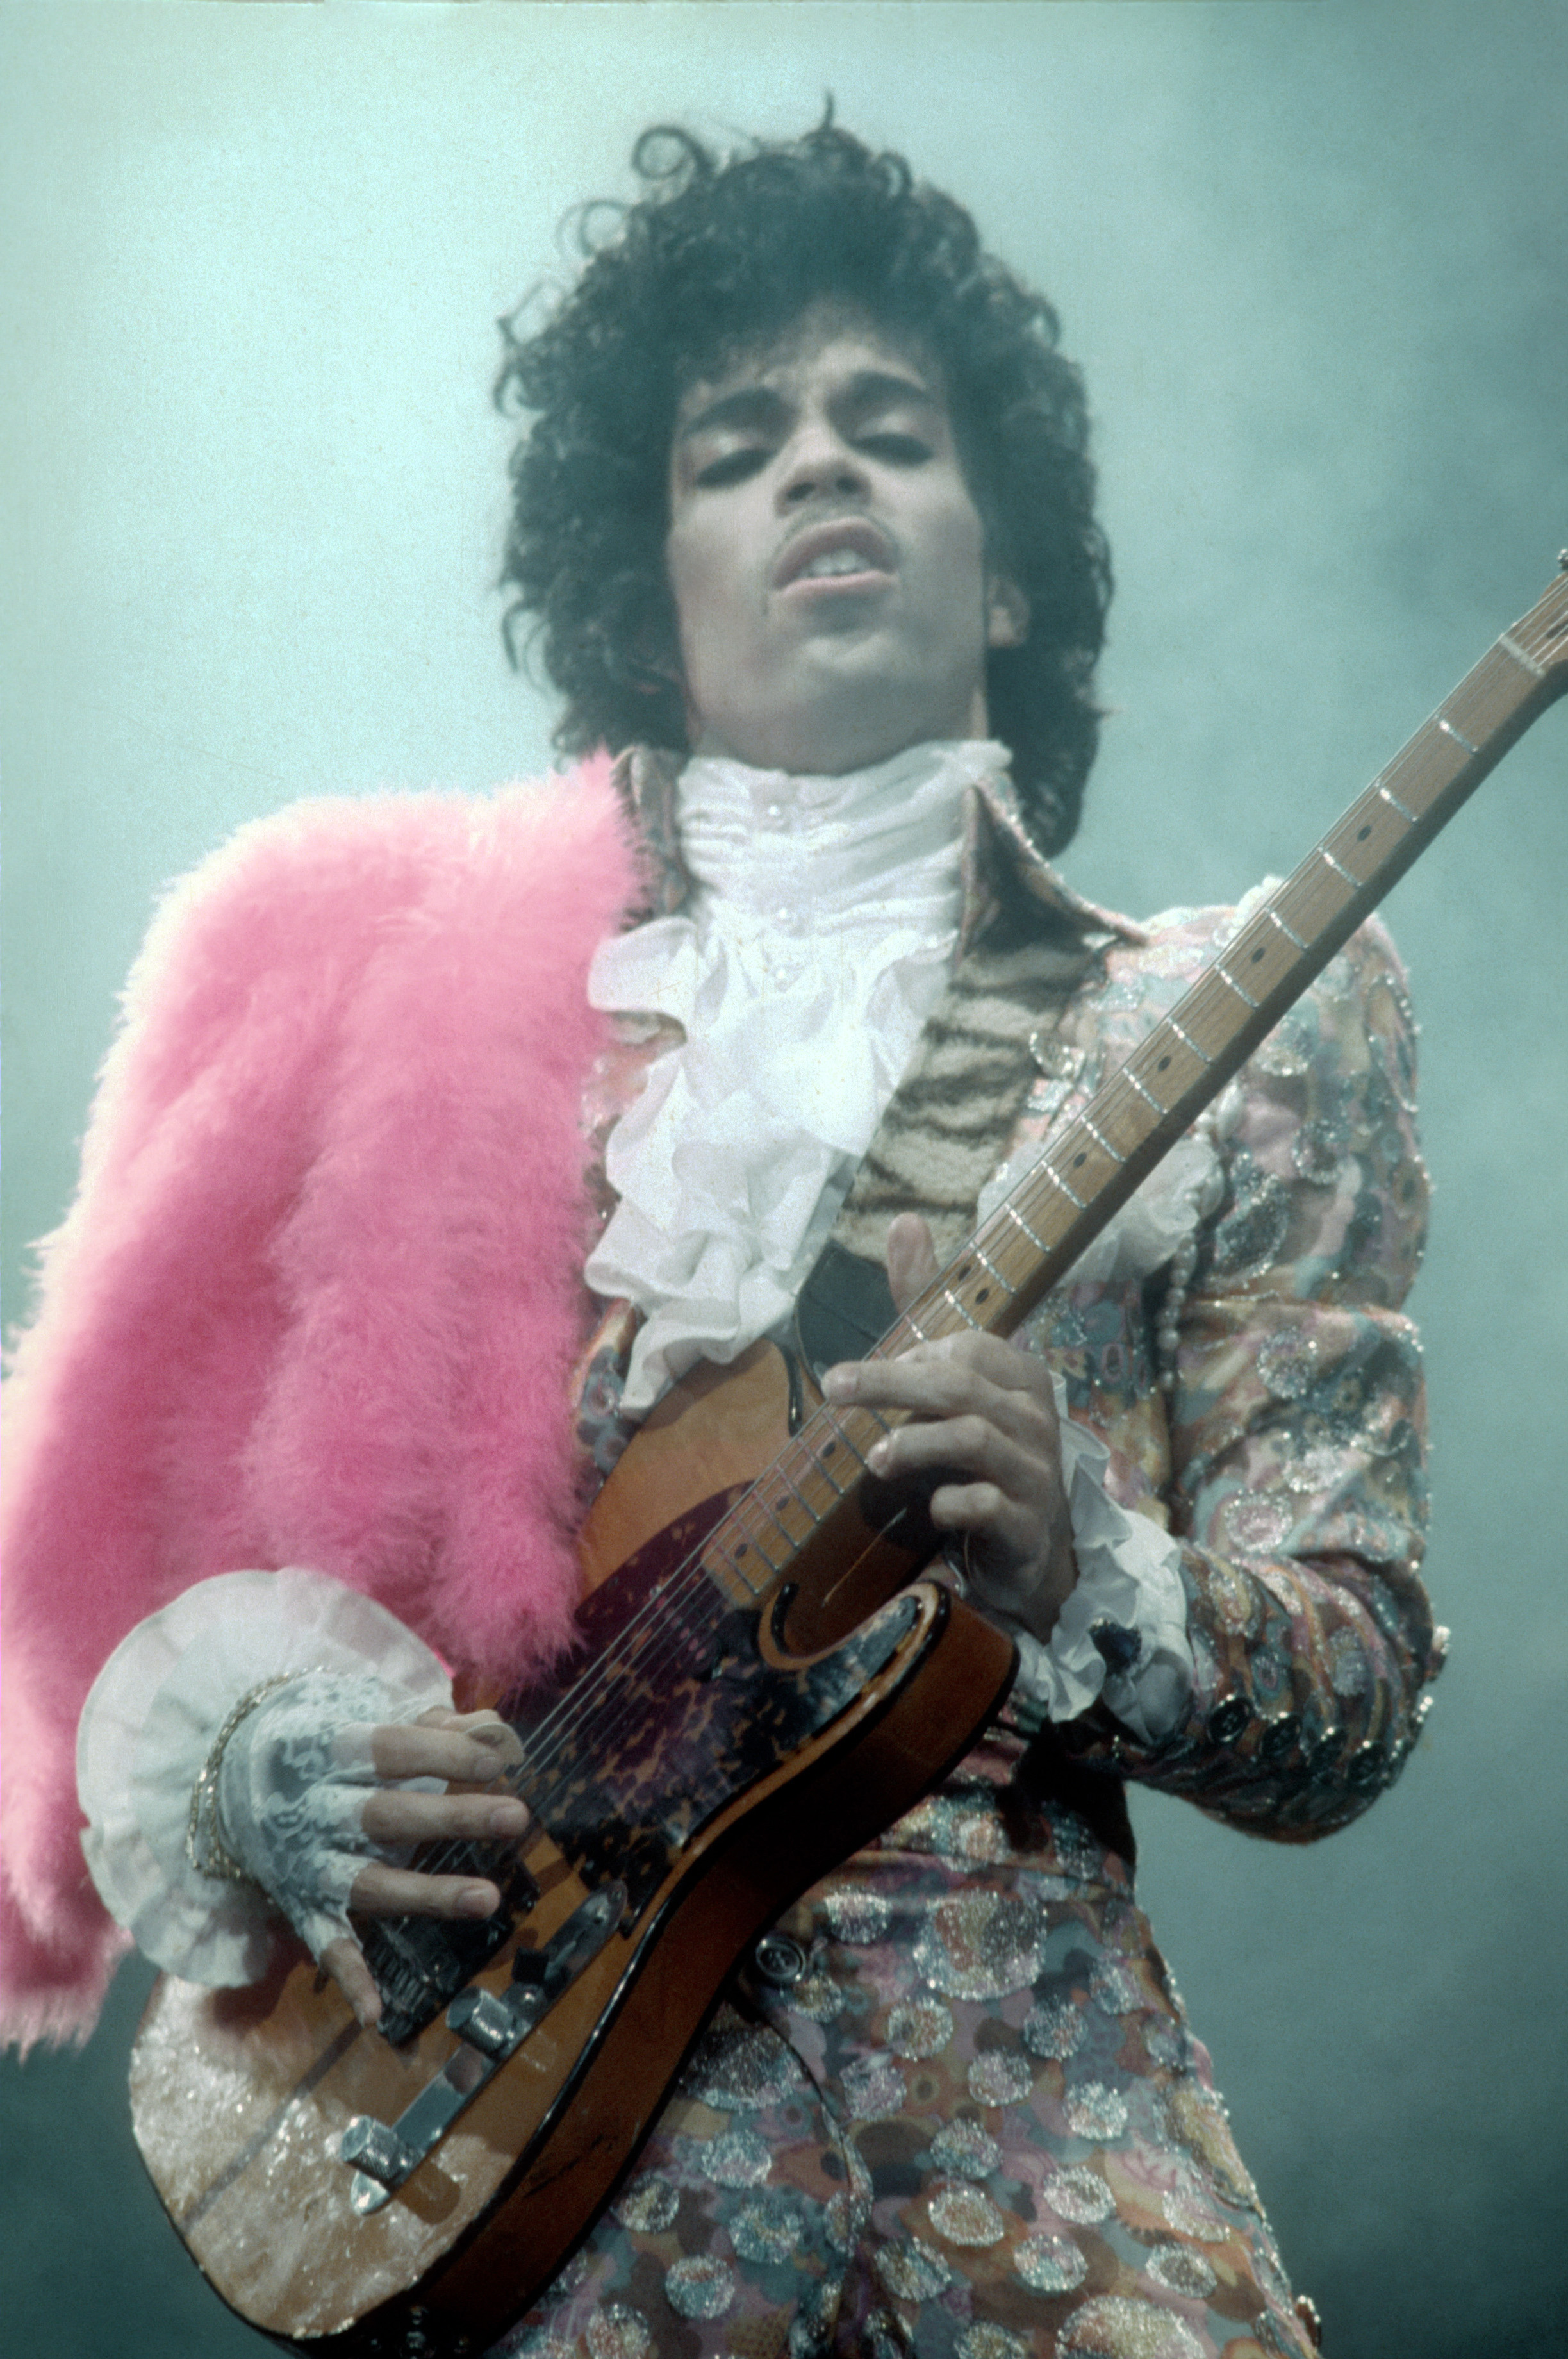 Prince en los años de furor de "Purple Rain". Inglewood, California (Foto: Michael Montfort/Michael Ochs Archives/Getty Images) 